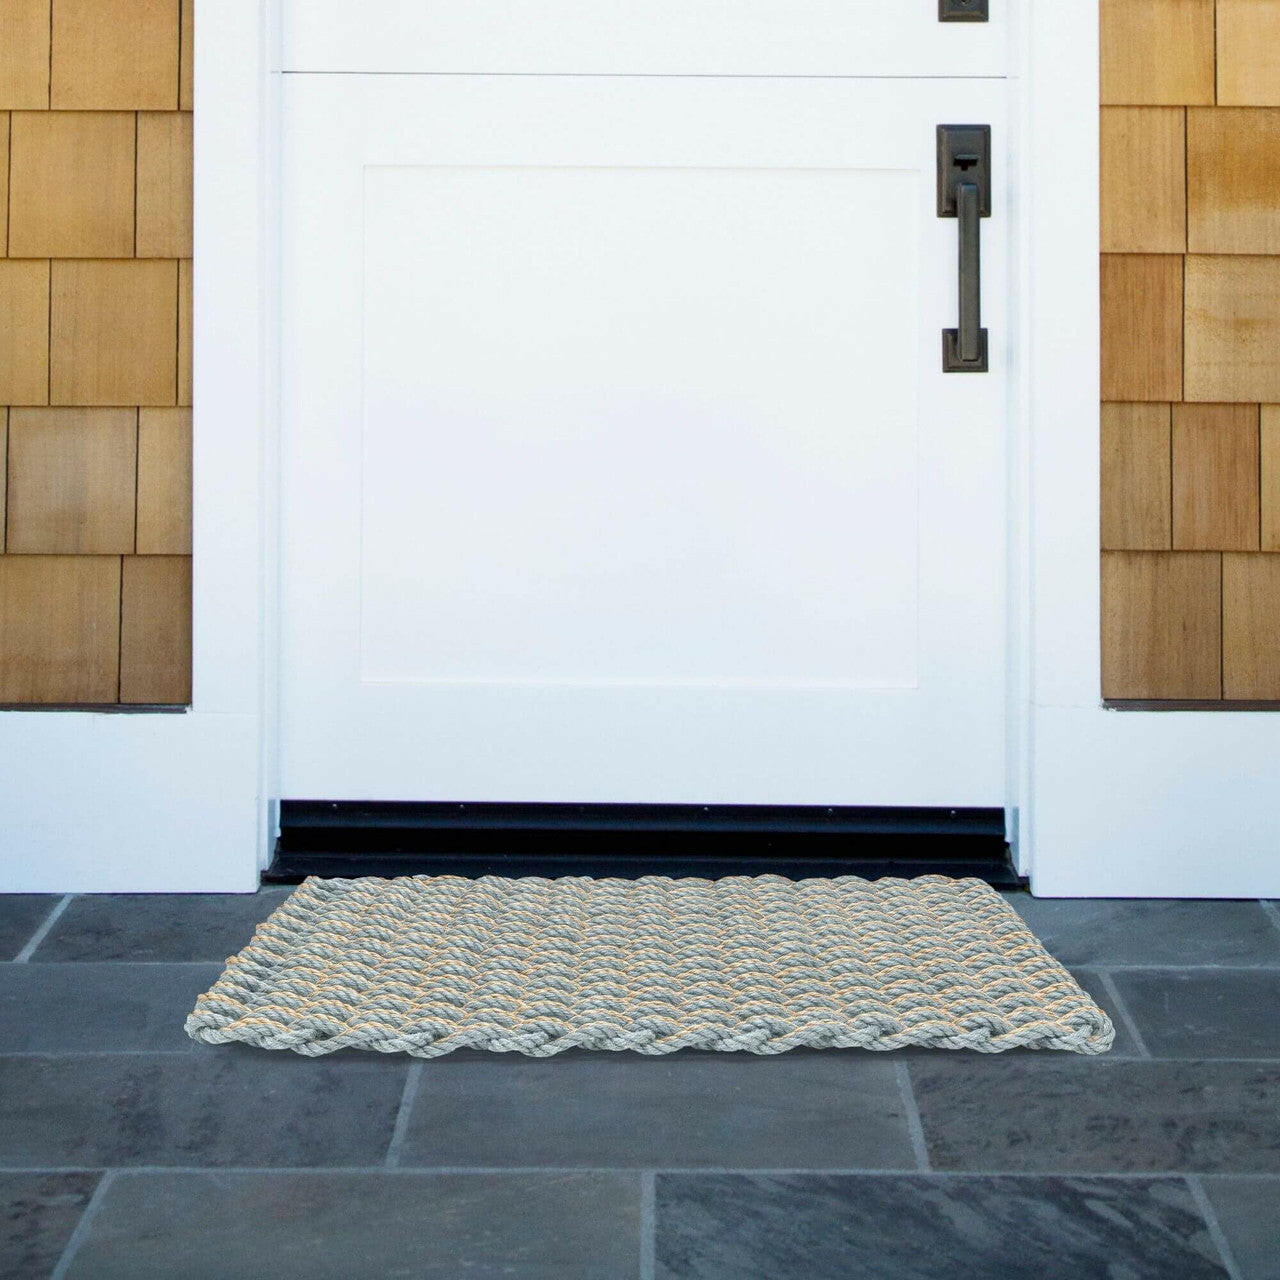 Lobster Rope Doormat, Silver & Dark Tan Double Weave, Wicked Good Door –  New England Trading Co